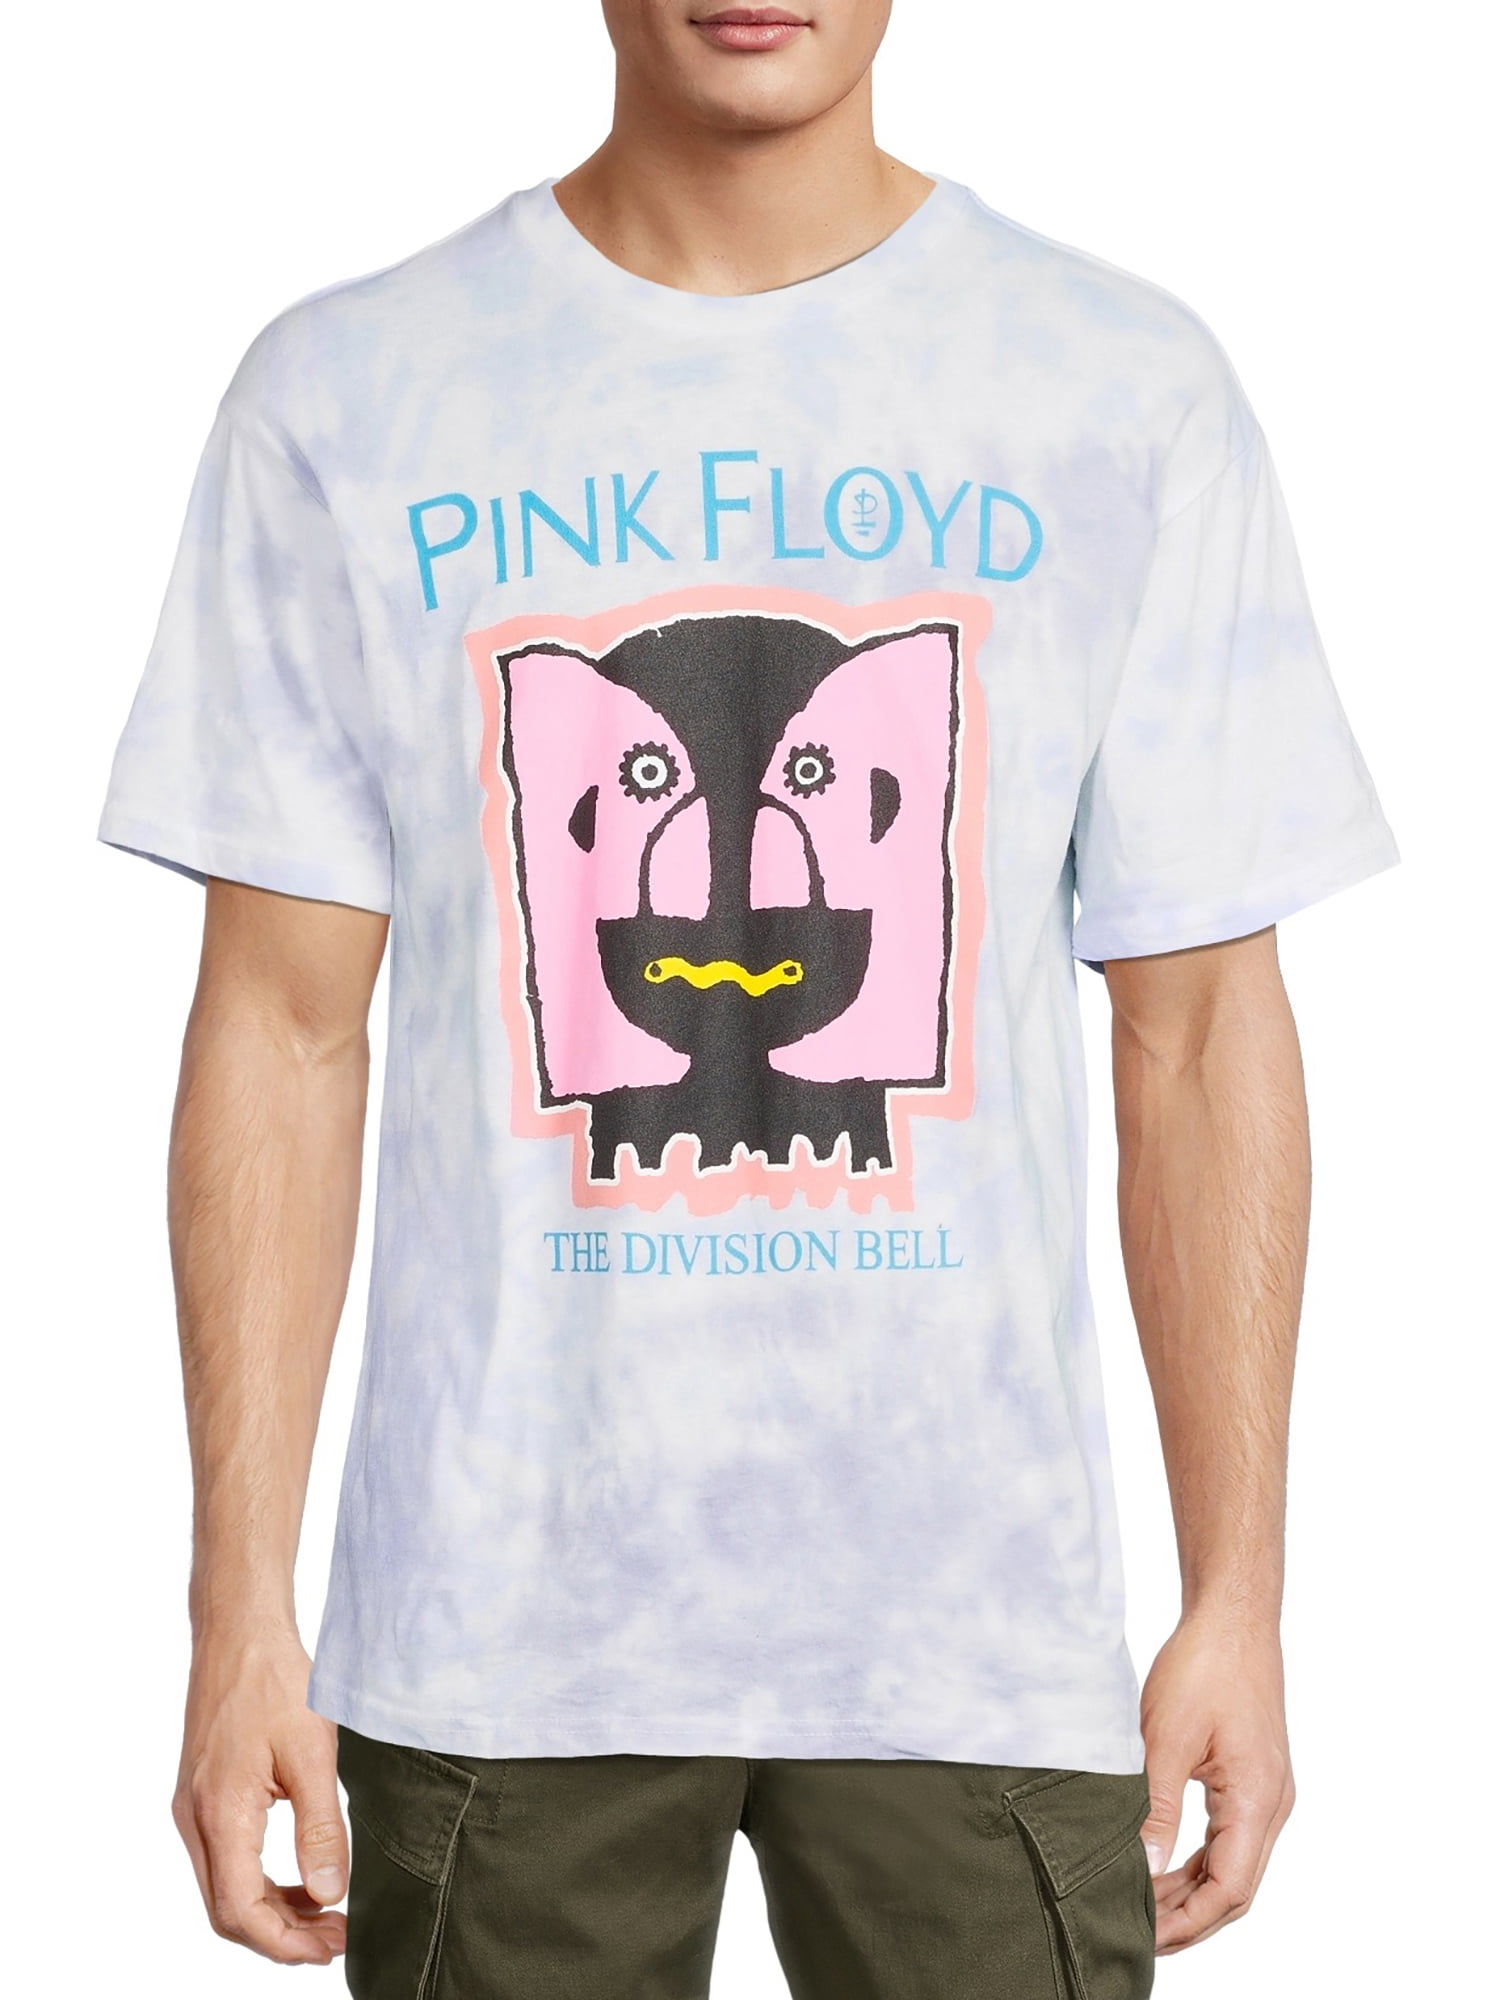 Pink Floyd Vintage Look T shirt XL Size 22 Chest Measurement Retro T shirt